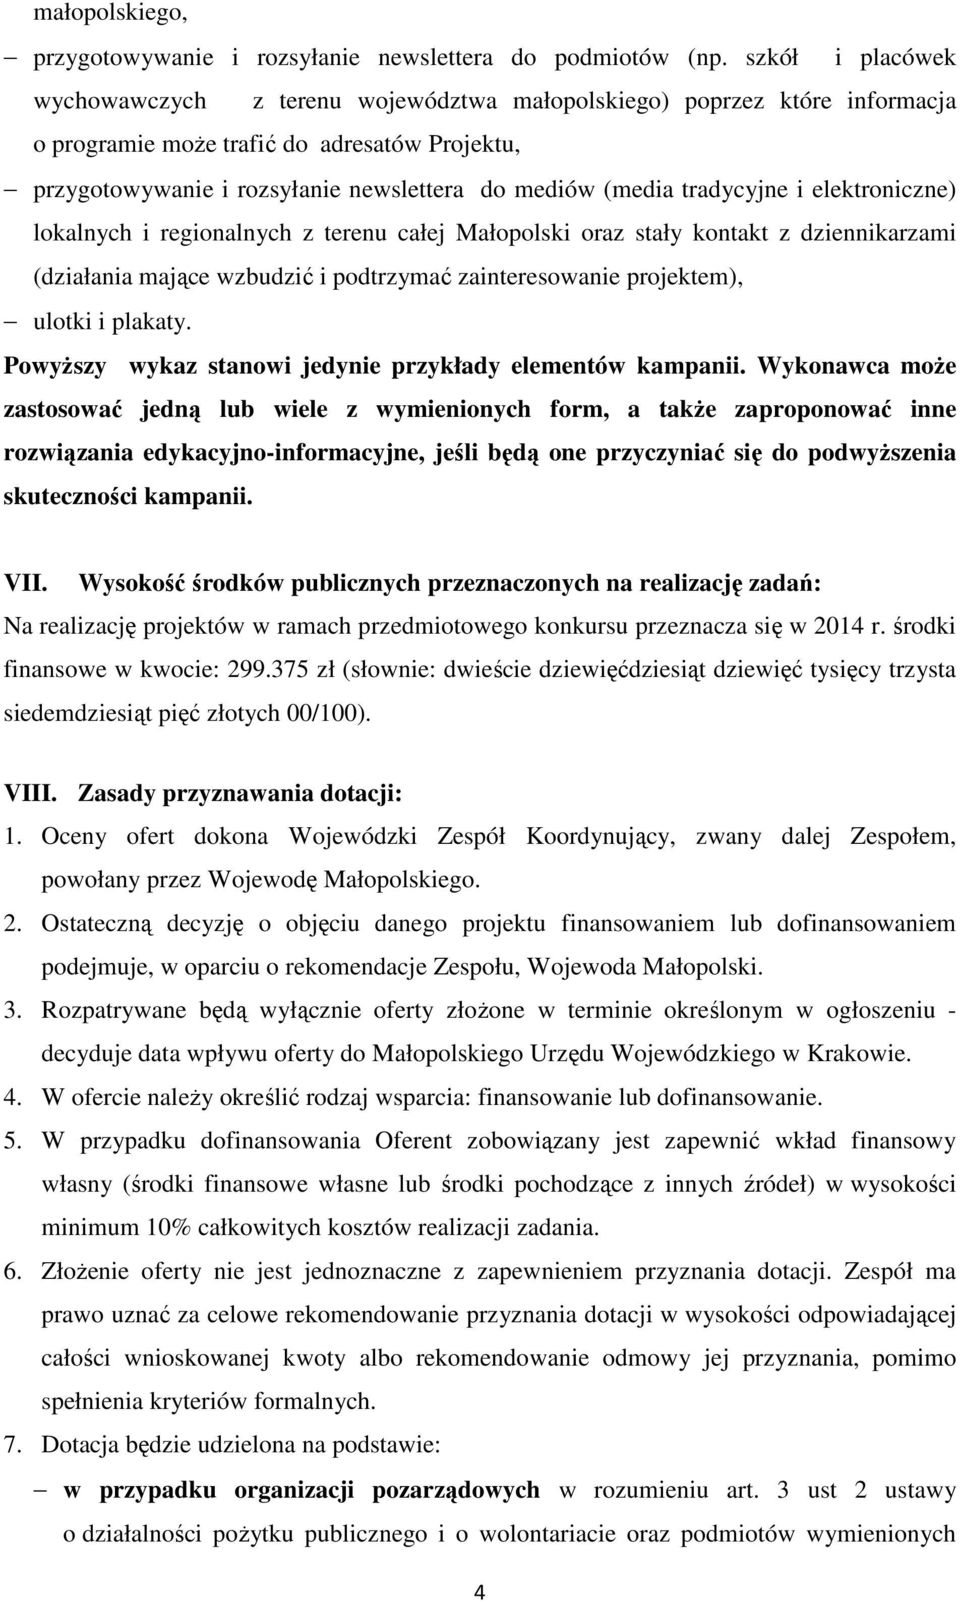 tradycyjne i elektroniczne) lokalnych i regionalnych z terenu całej Małopolski oraz stały kontakt z dziennikarzami (działania mające wzbudzić i podtrzymać zainteresowanie projektem), ulotki i plakaty.